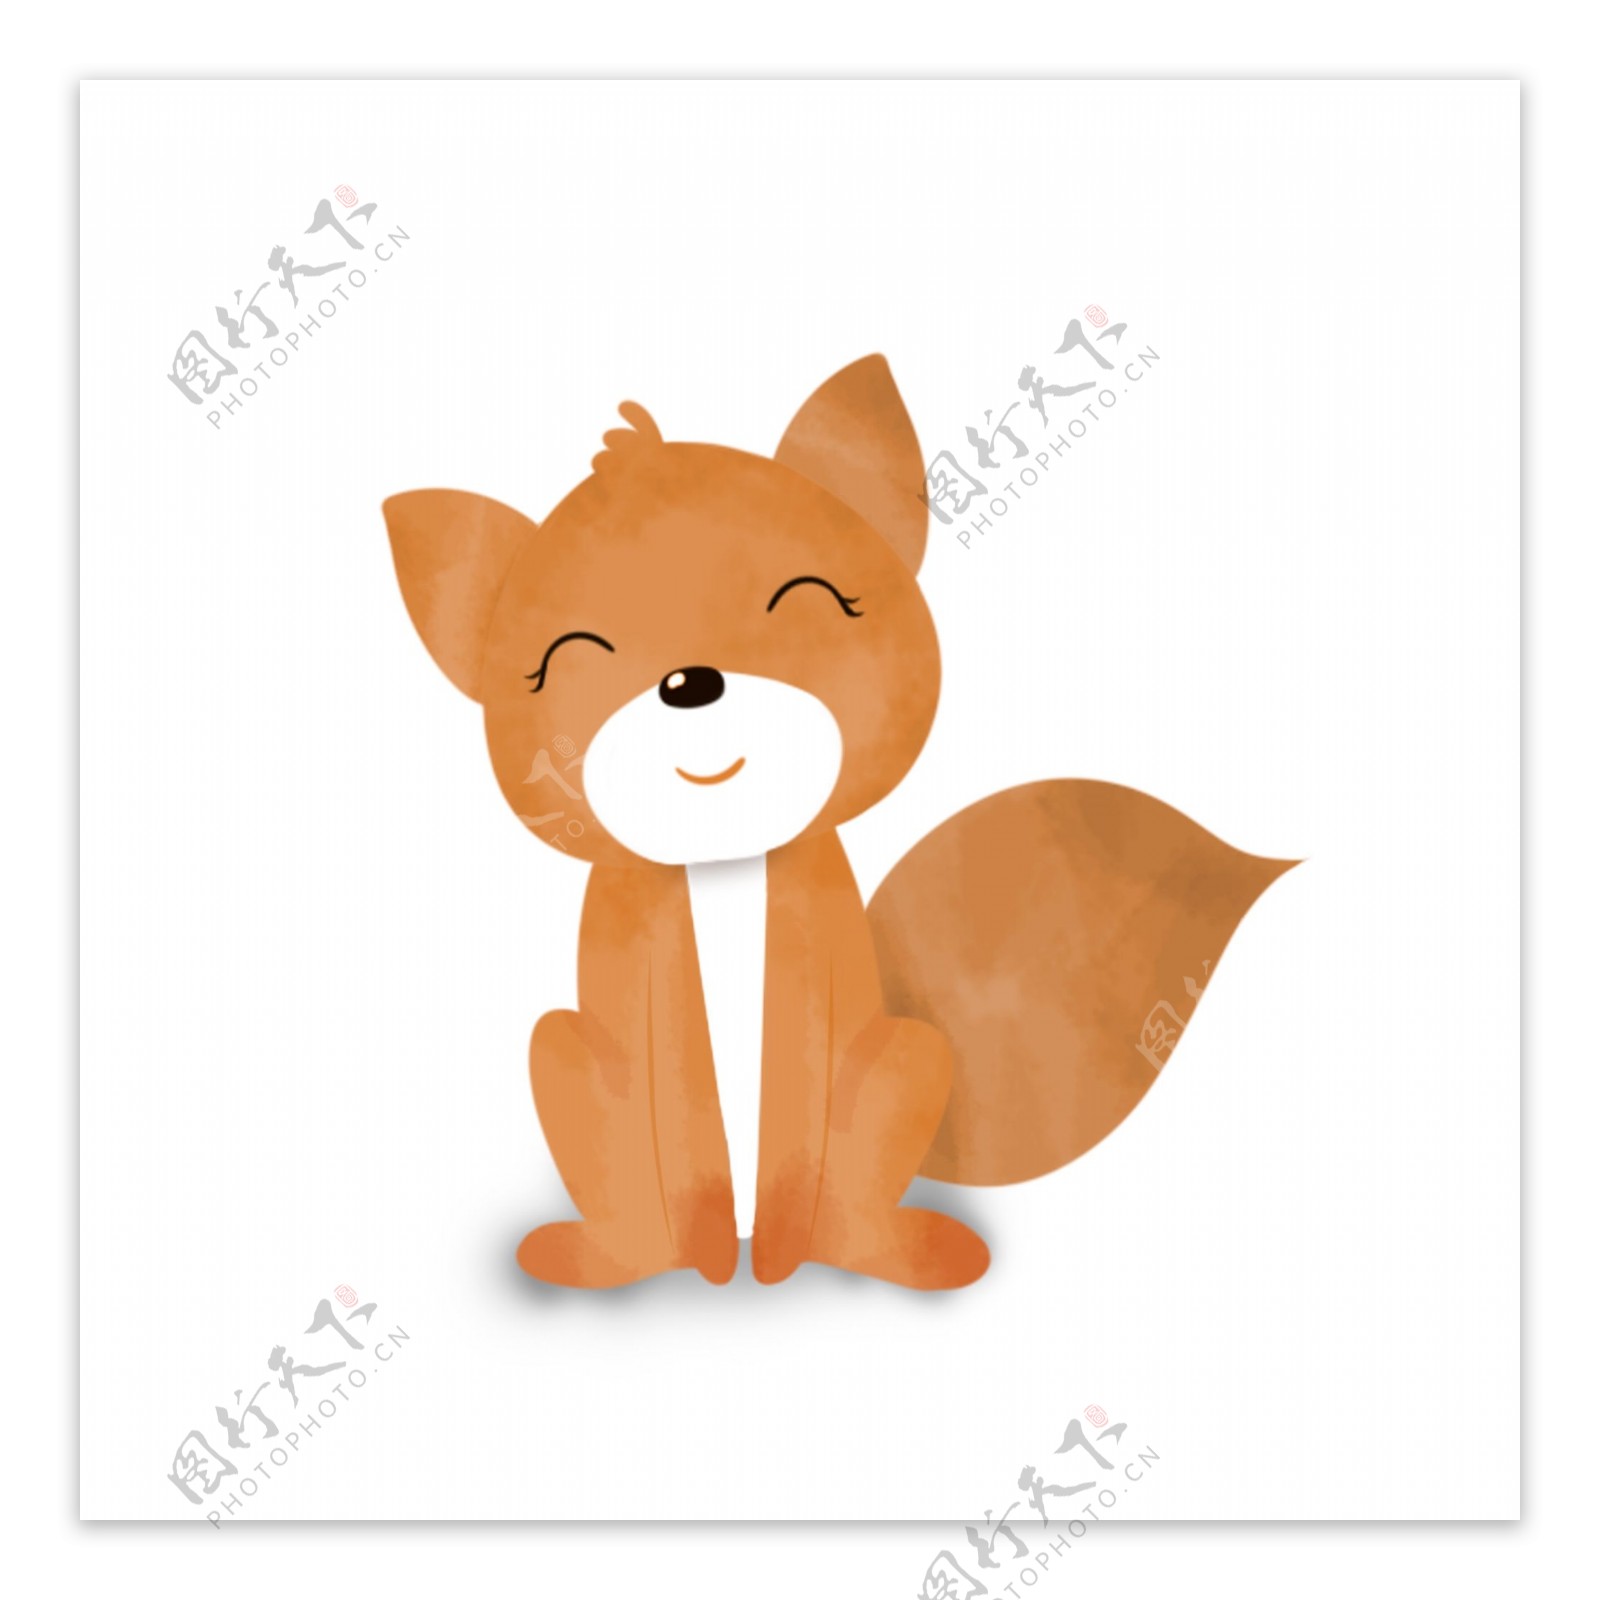 卡通可爱微笑的小狐狸动物设计